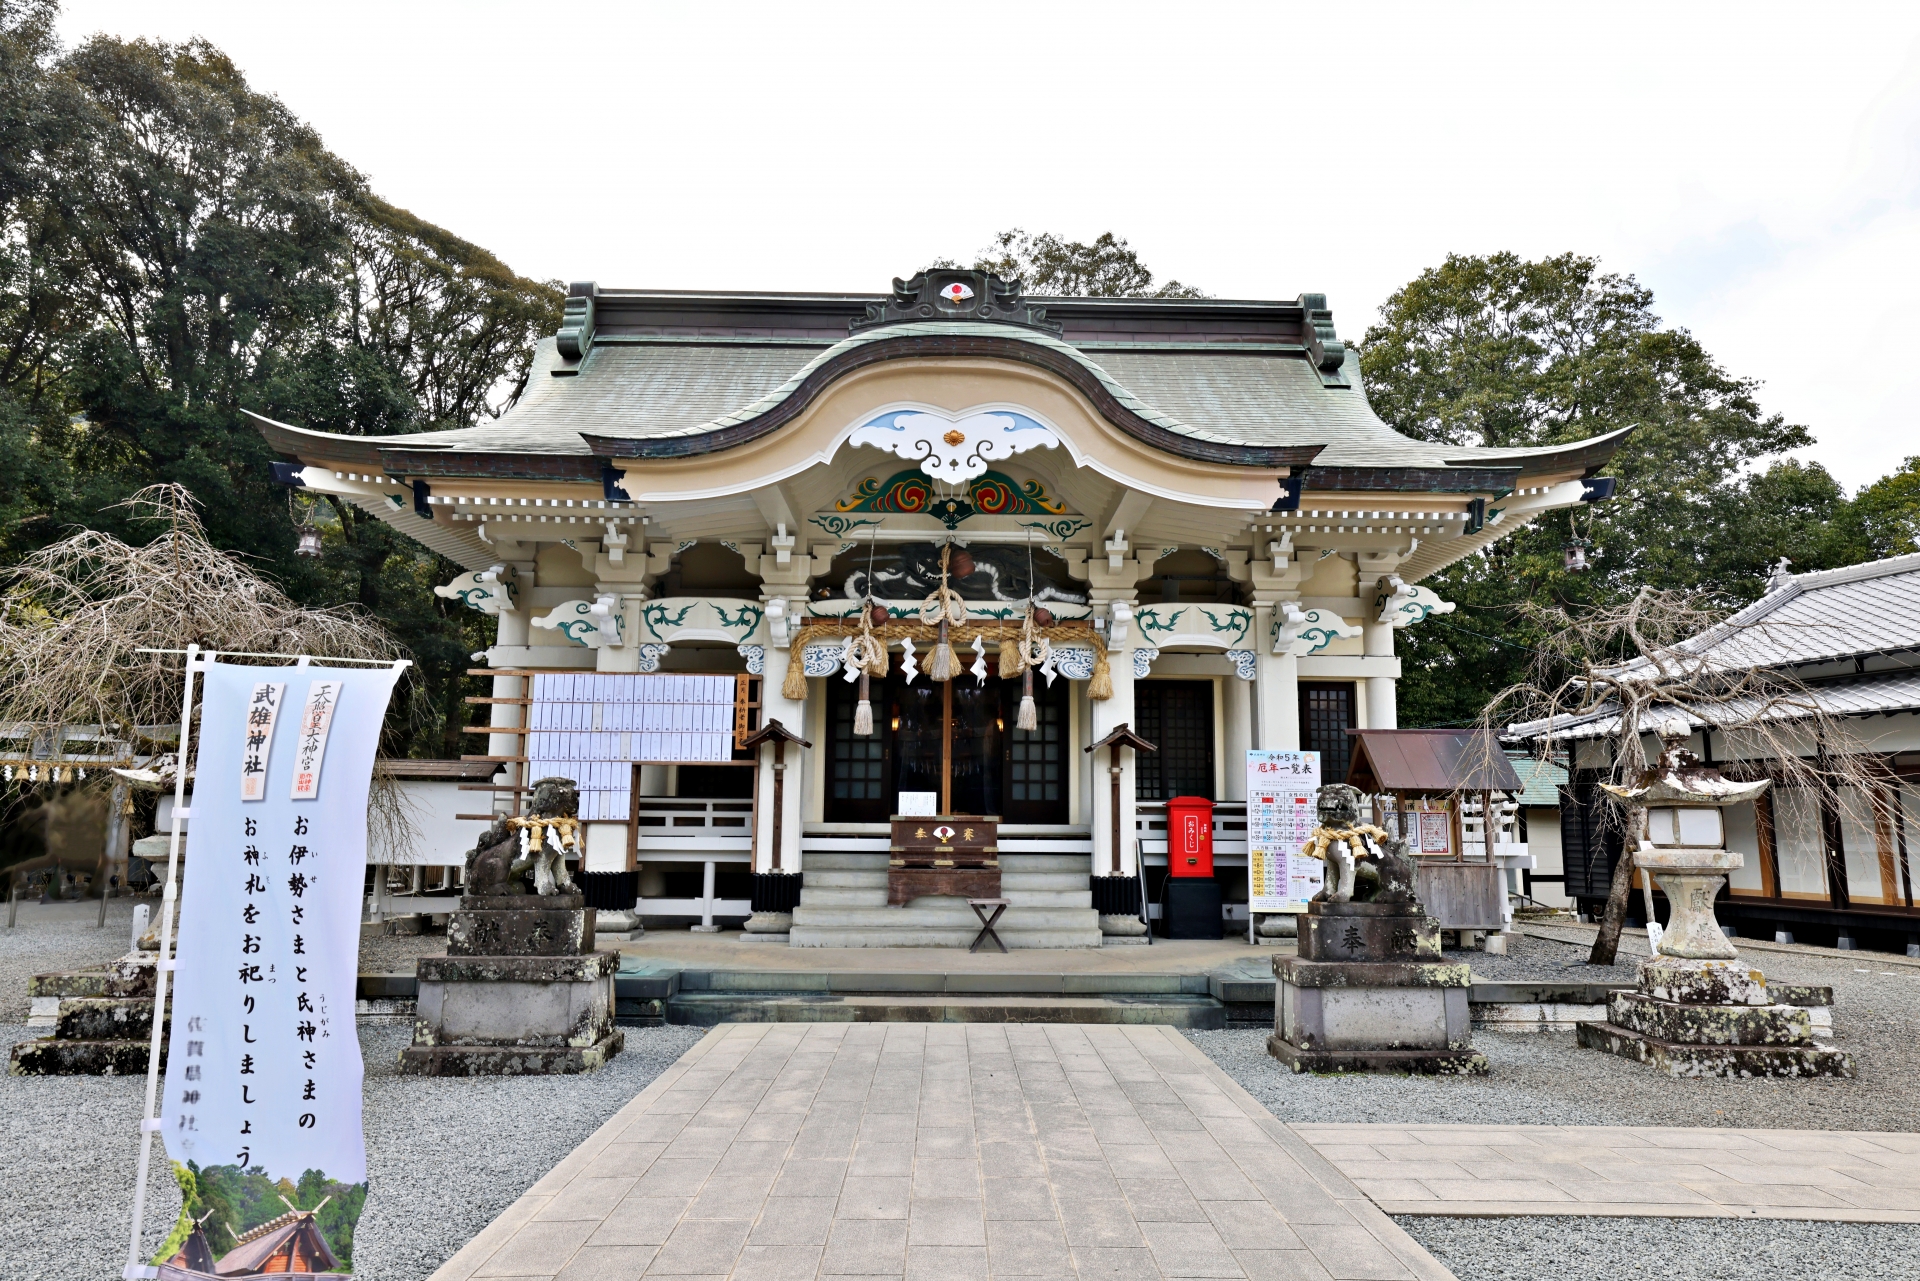 佐賀県武雄市の「武雄神社」。市内で最も古く由緒ある神社です